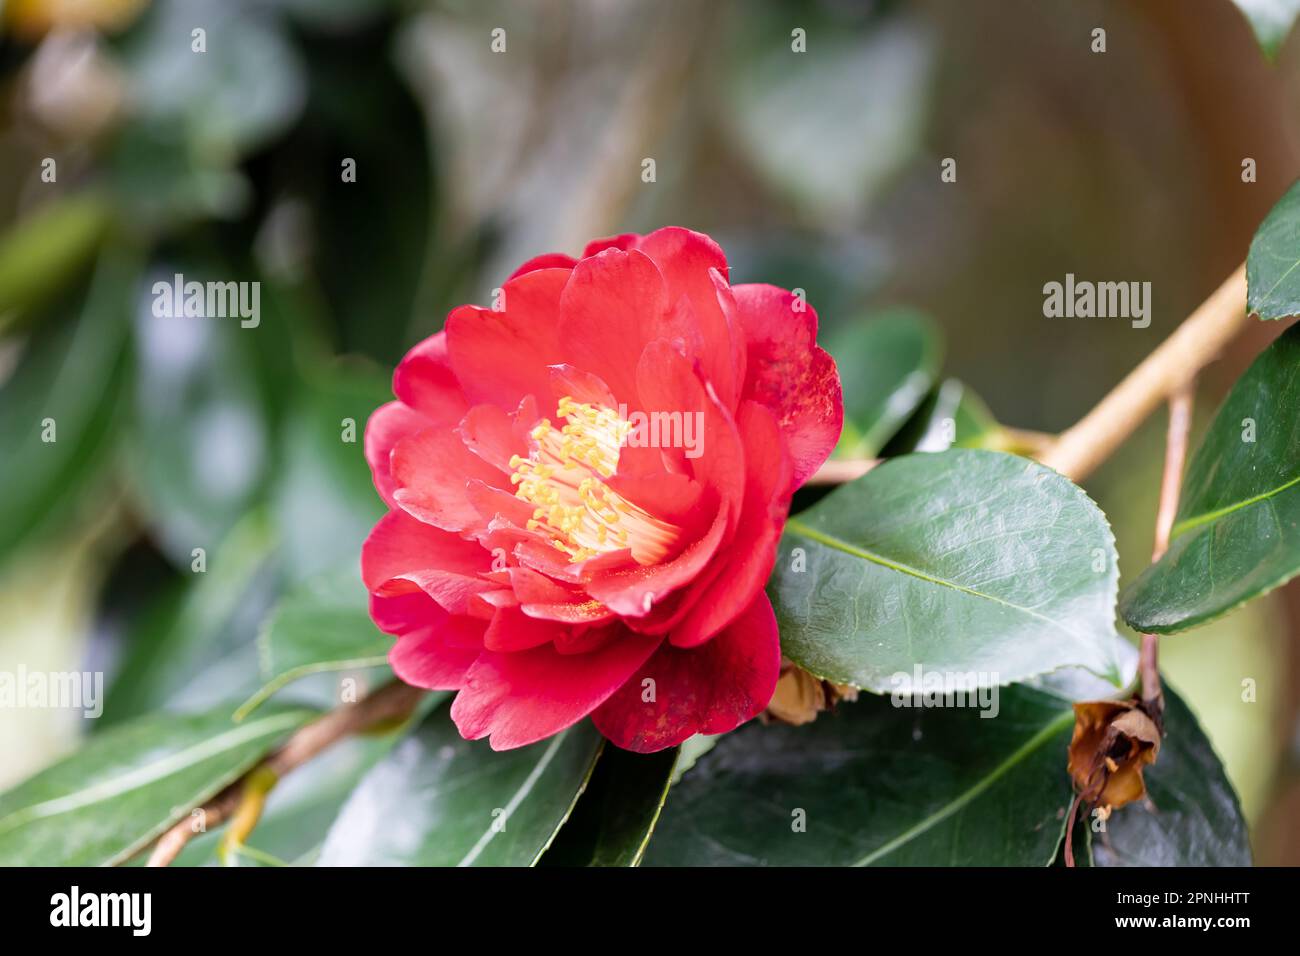 Camellia Japonica 'dama Girl' fleurit au printemps. Dorset, Angleterre, Royaume-Uni Banque D'Images